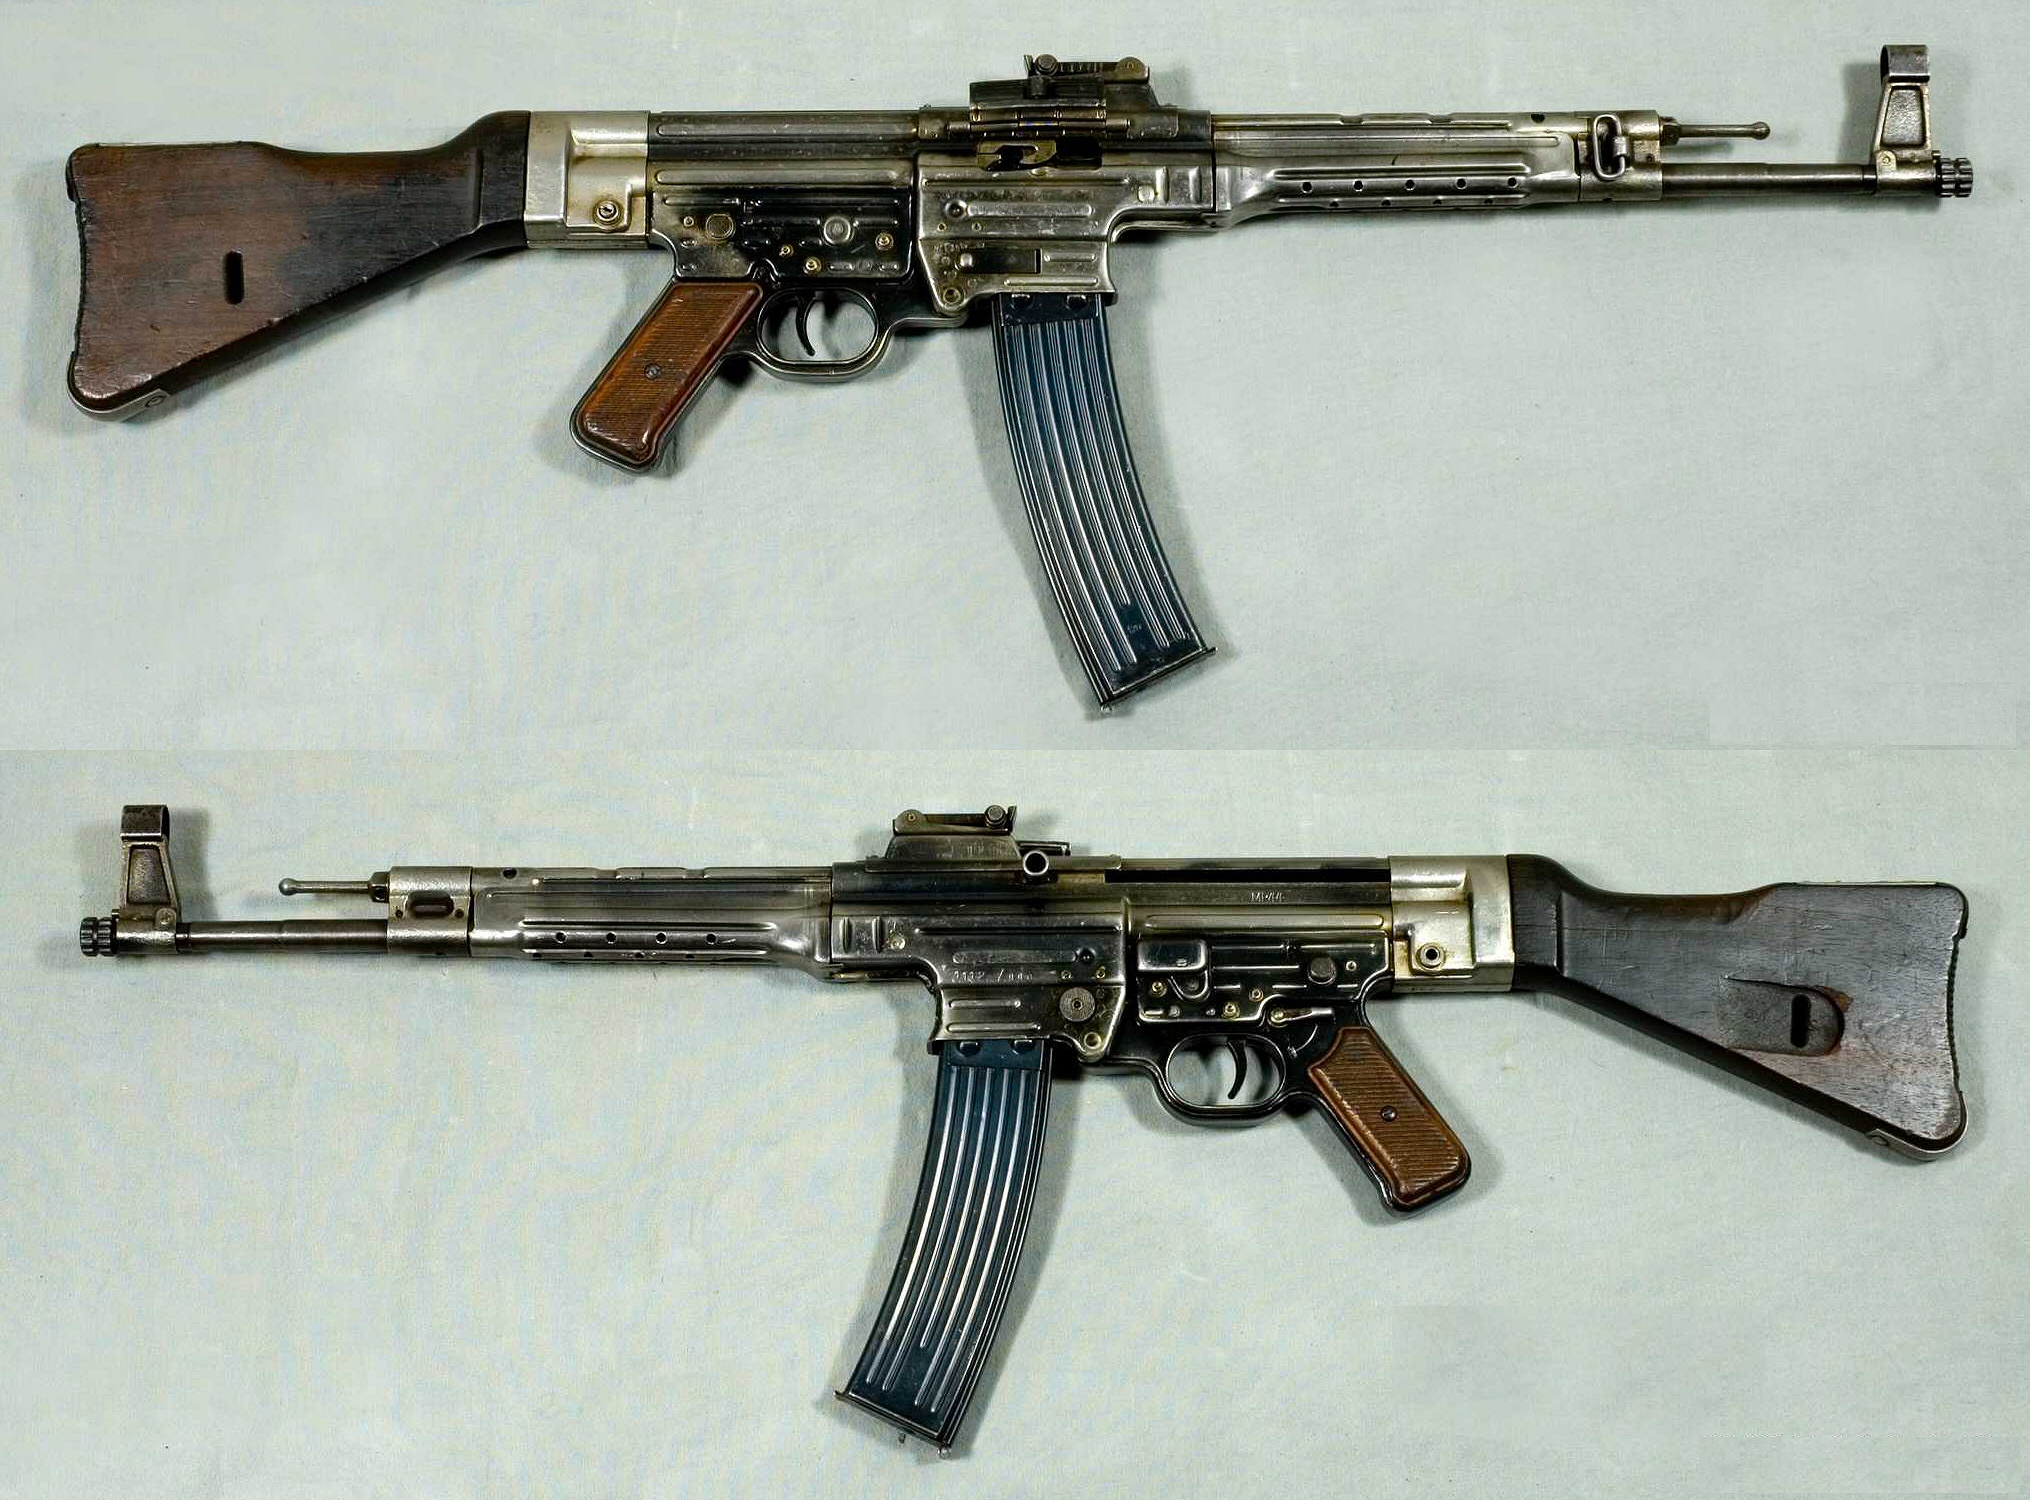 MP44_-_Tyskland_-_8x33mm_Kurz_-_Arm%C3%A